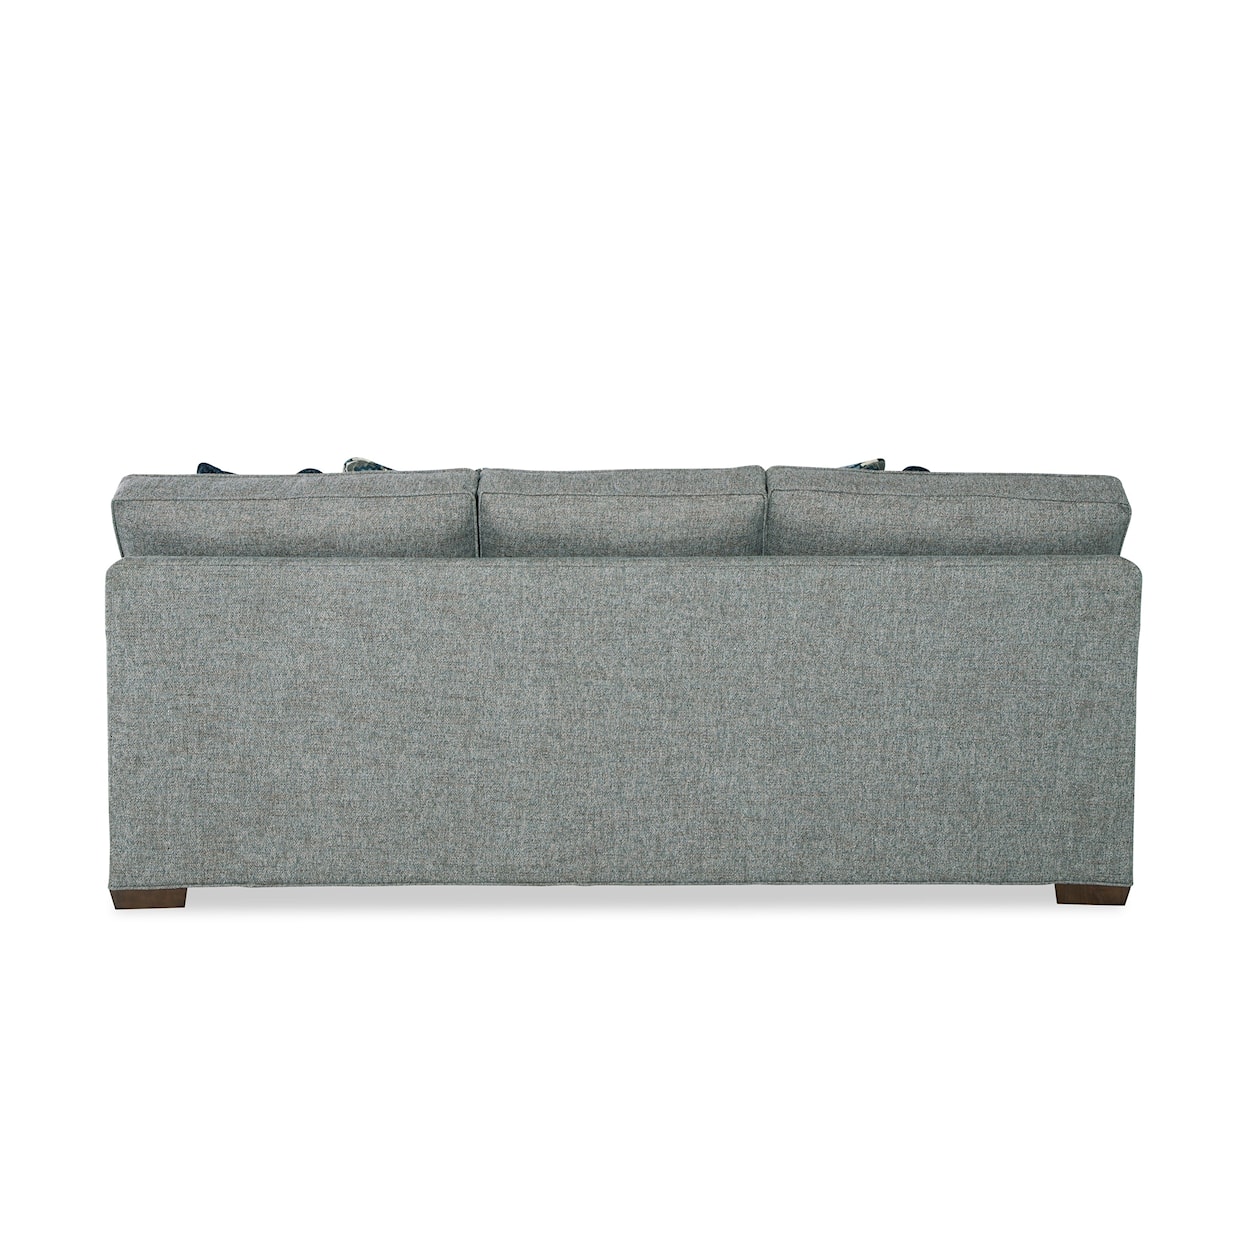 Hickory Craft 723250 Sofa